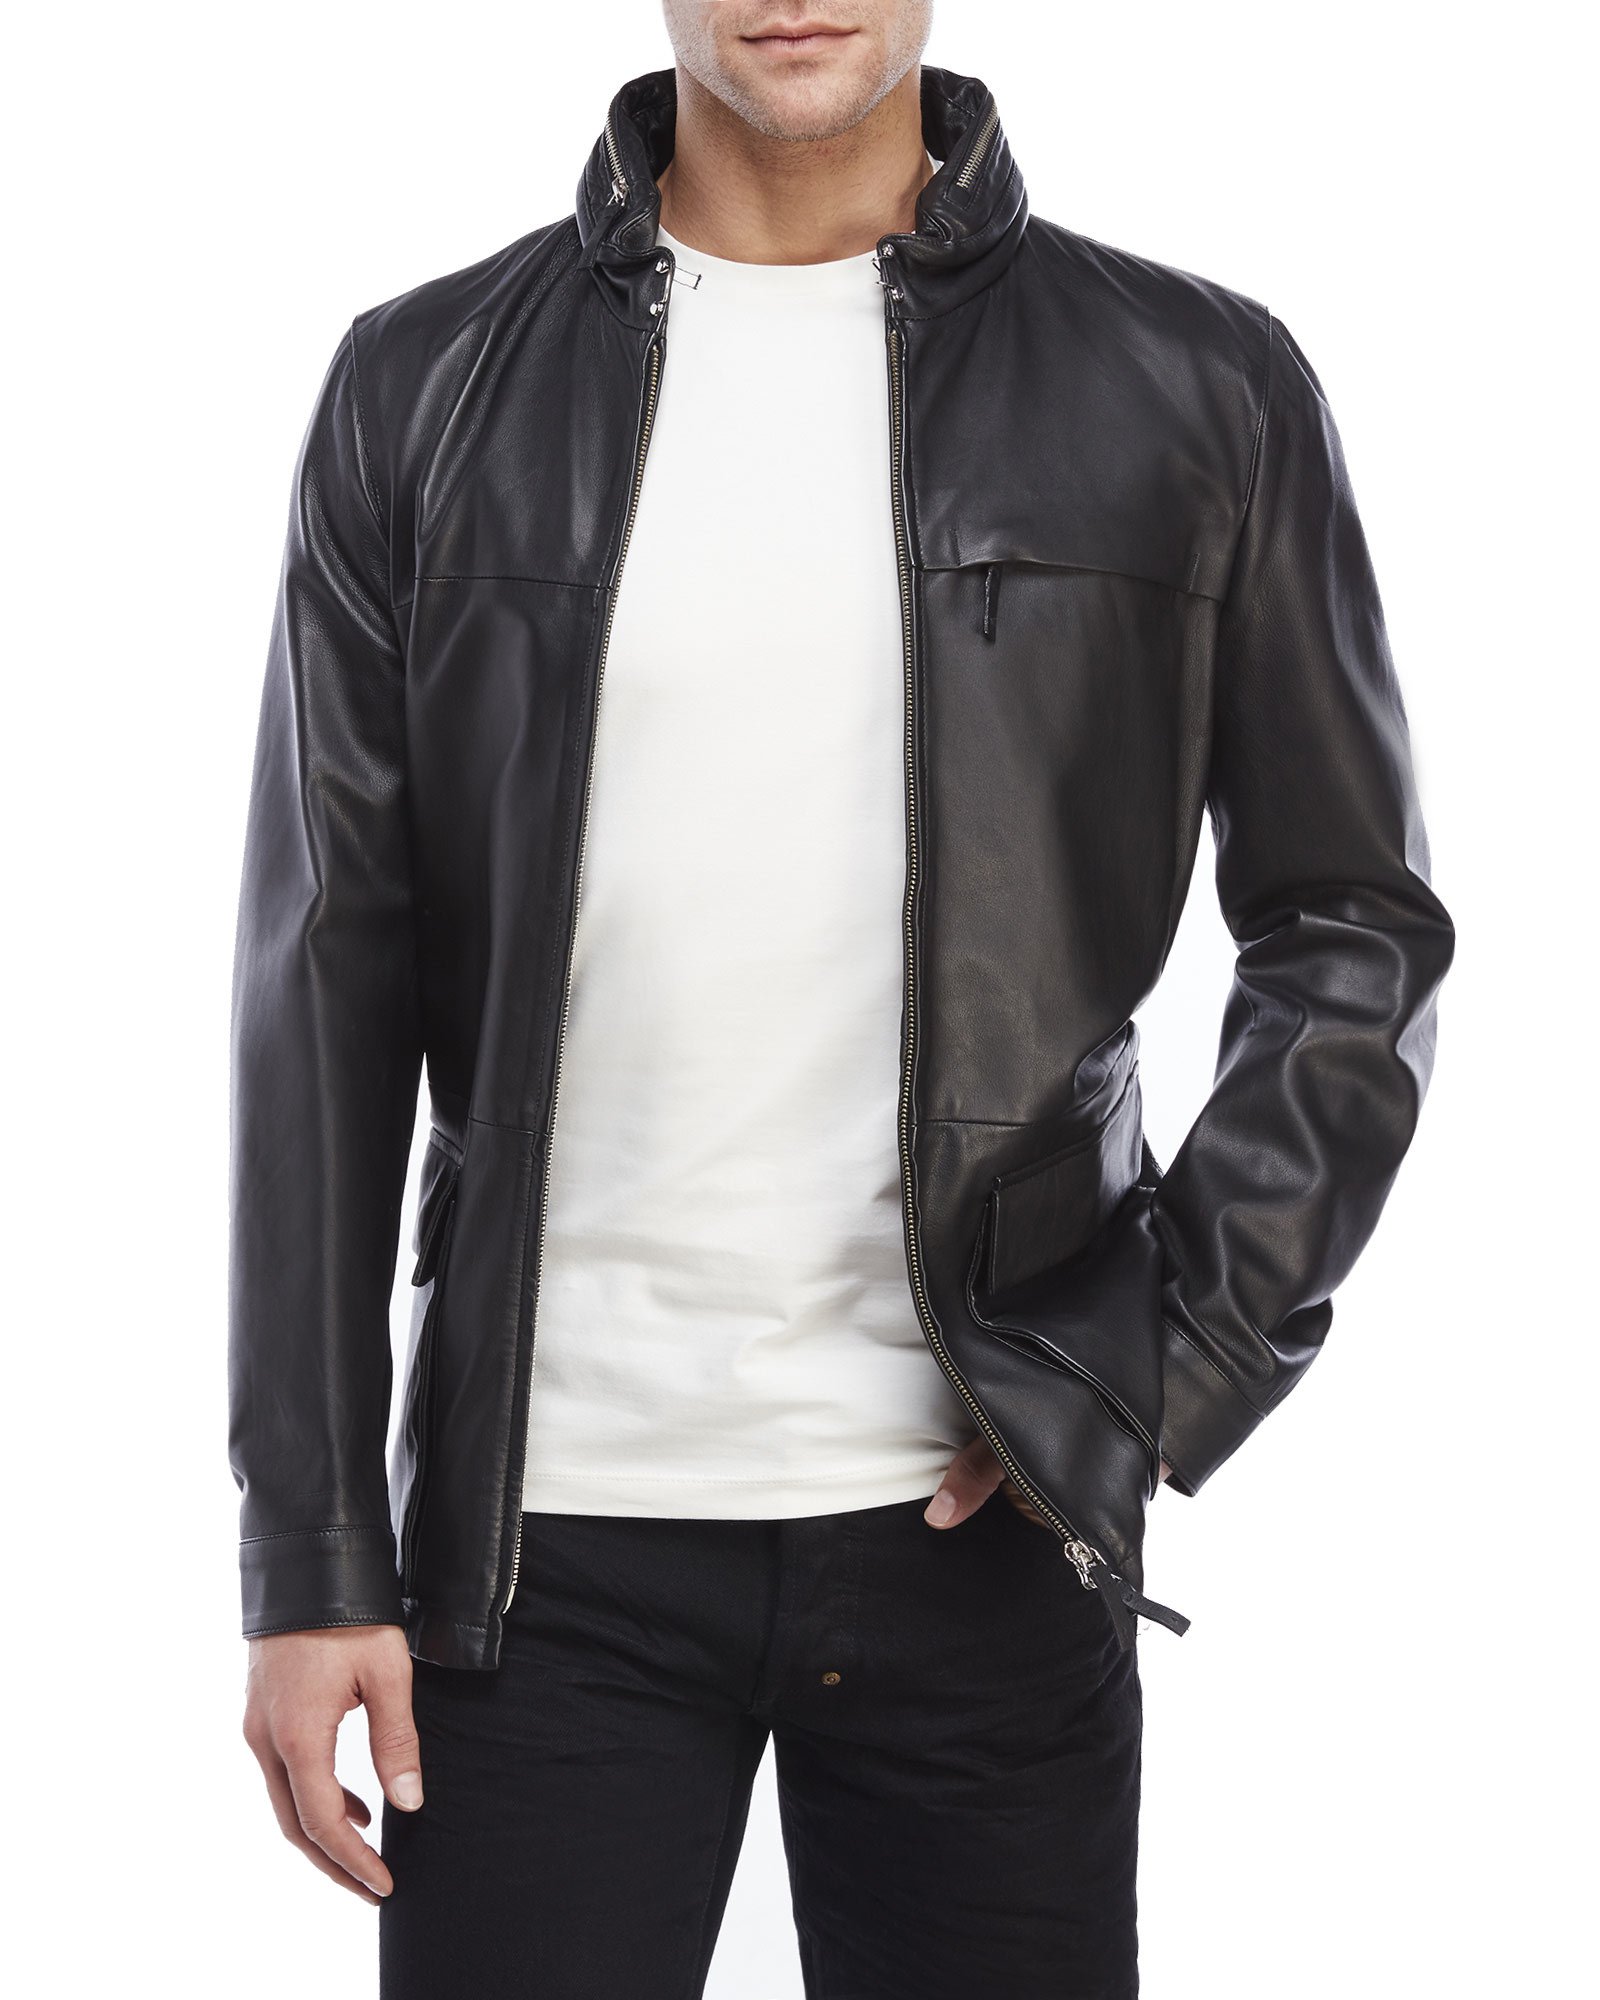 Armani Emporio Collezione Black Leather Jacket - Cairoamani.com